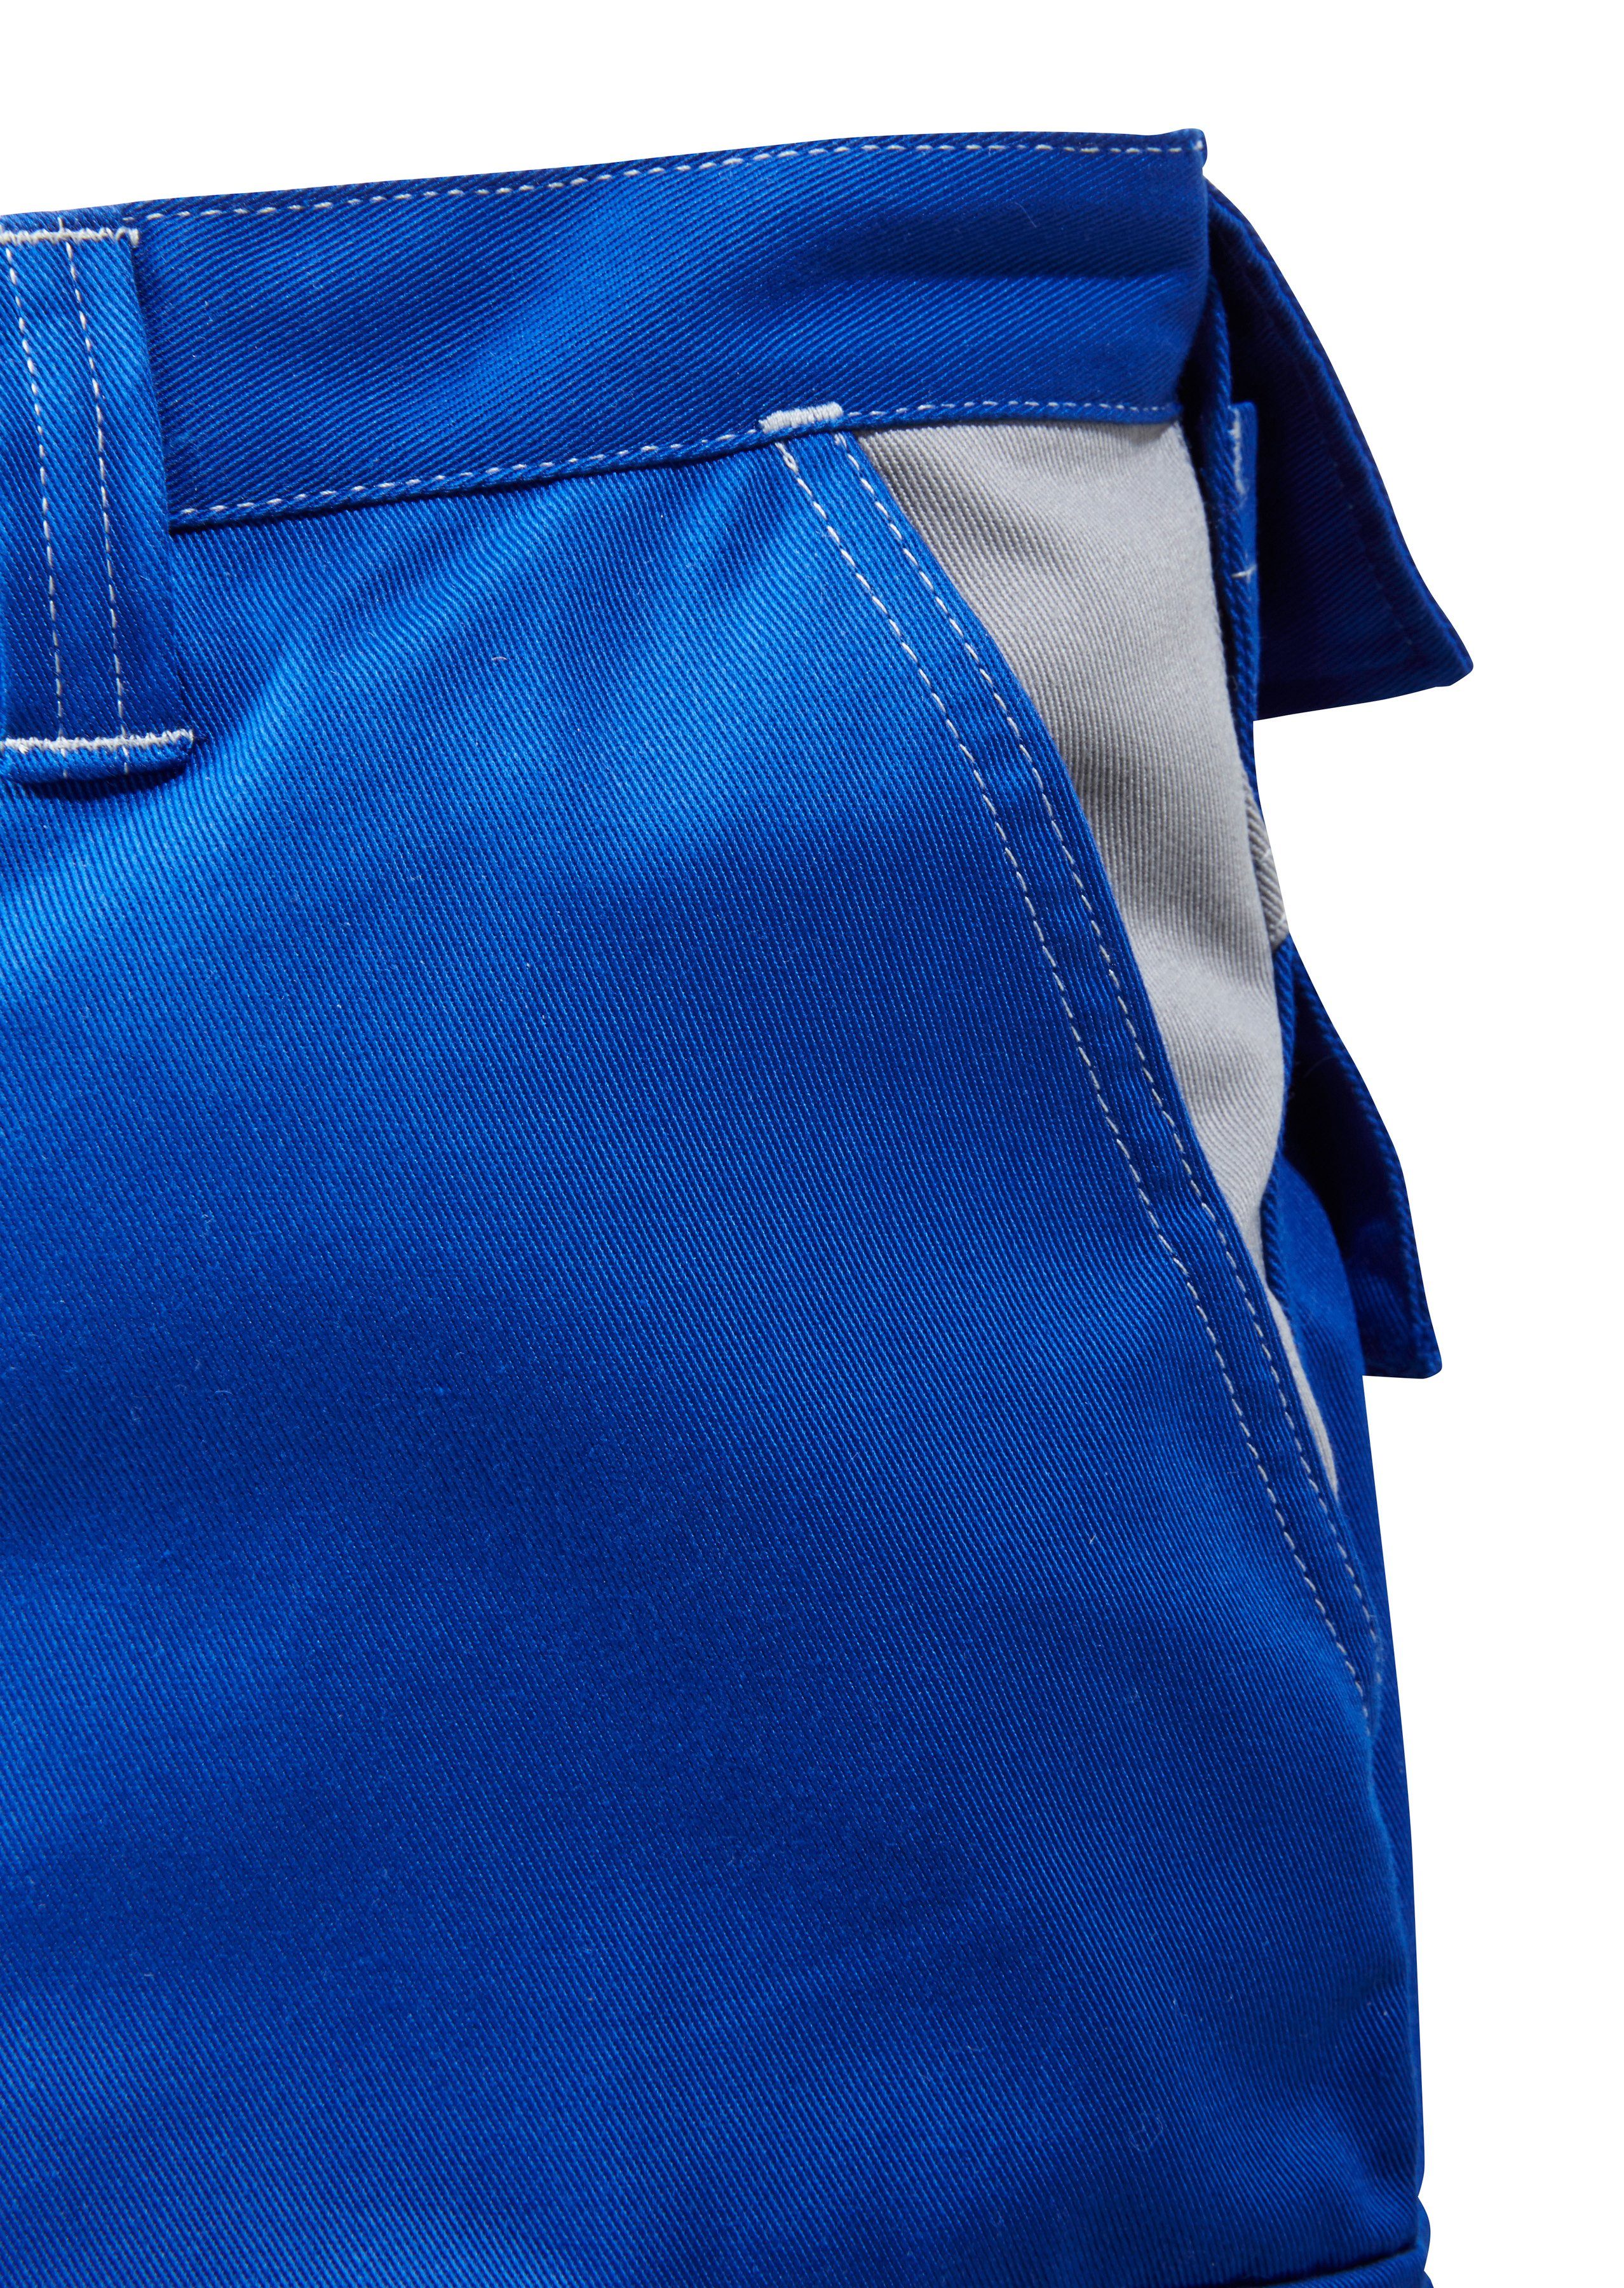 Kübler mit Arbeitshose blau-grau Kniepolstertaschen